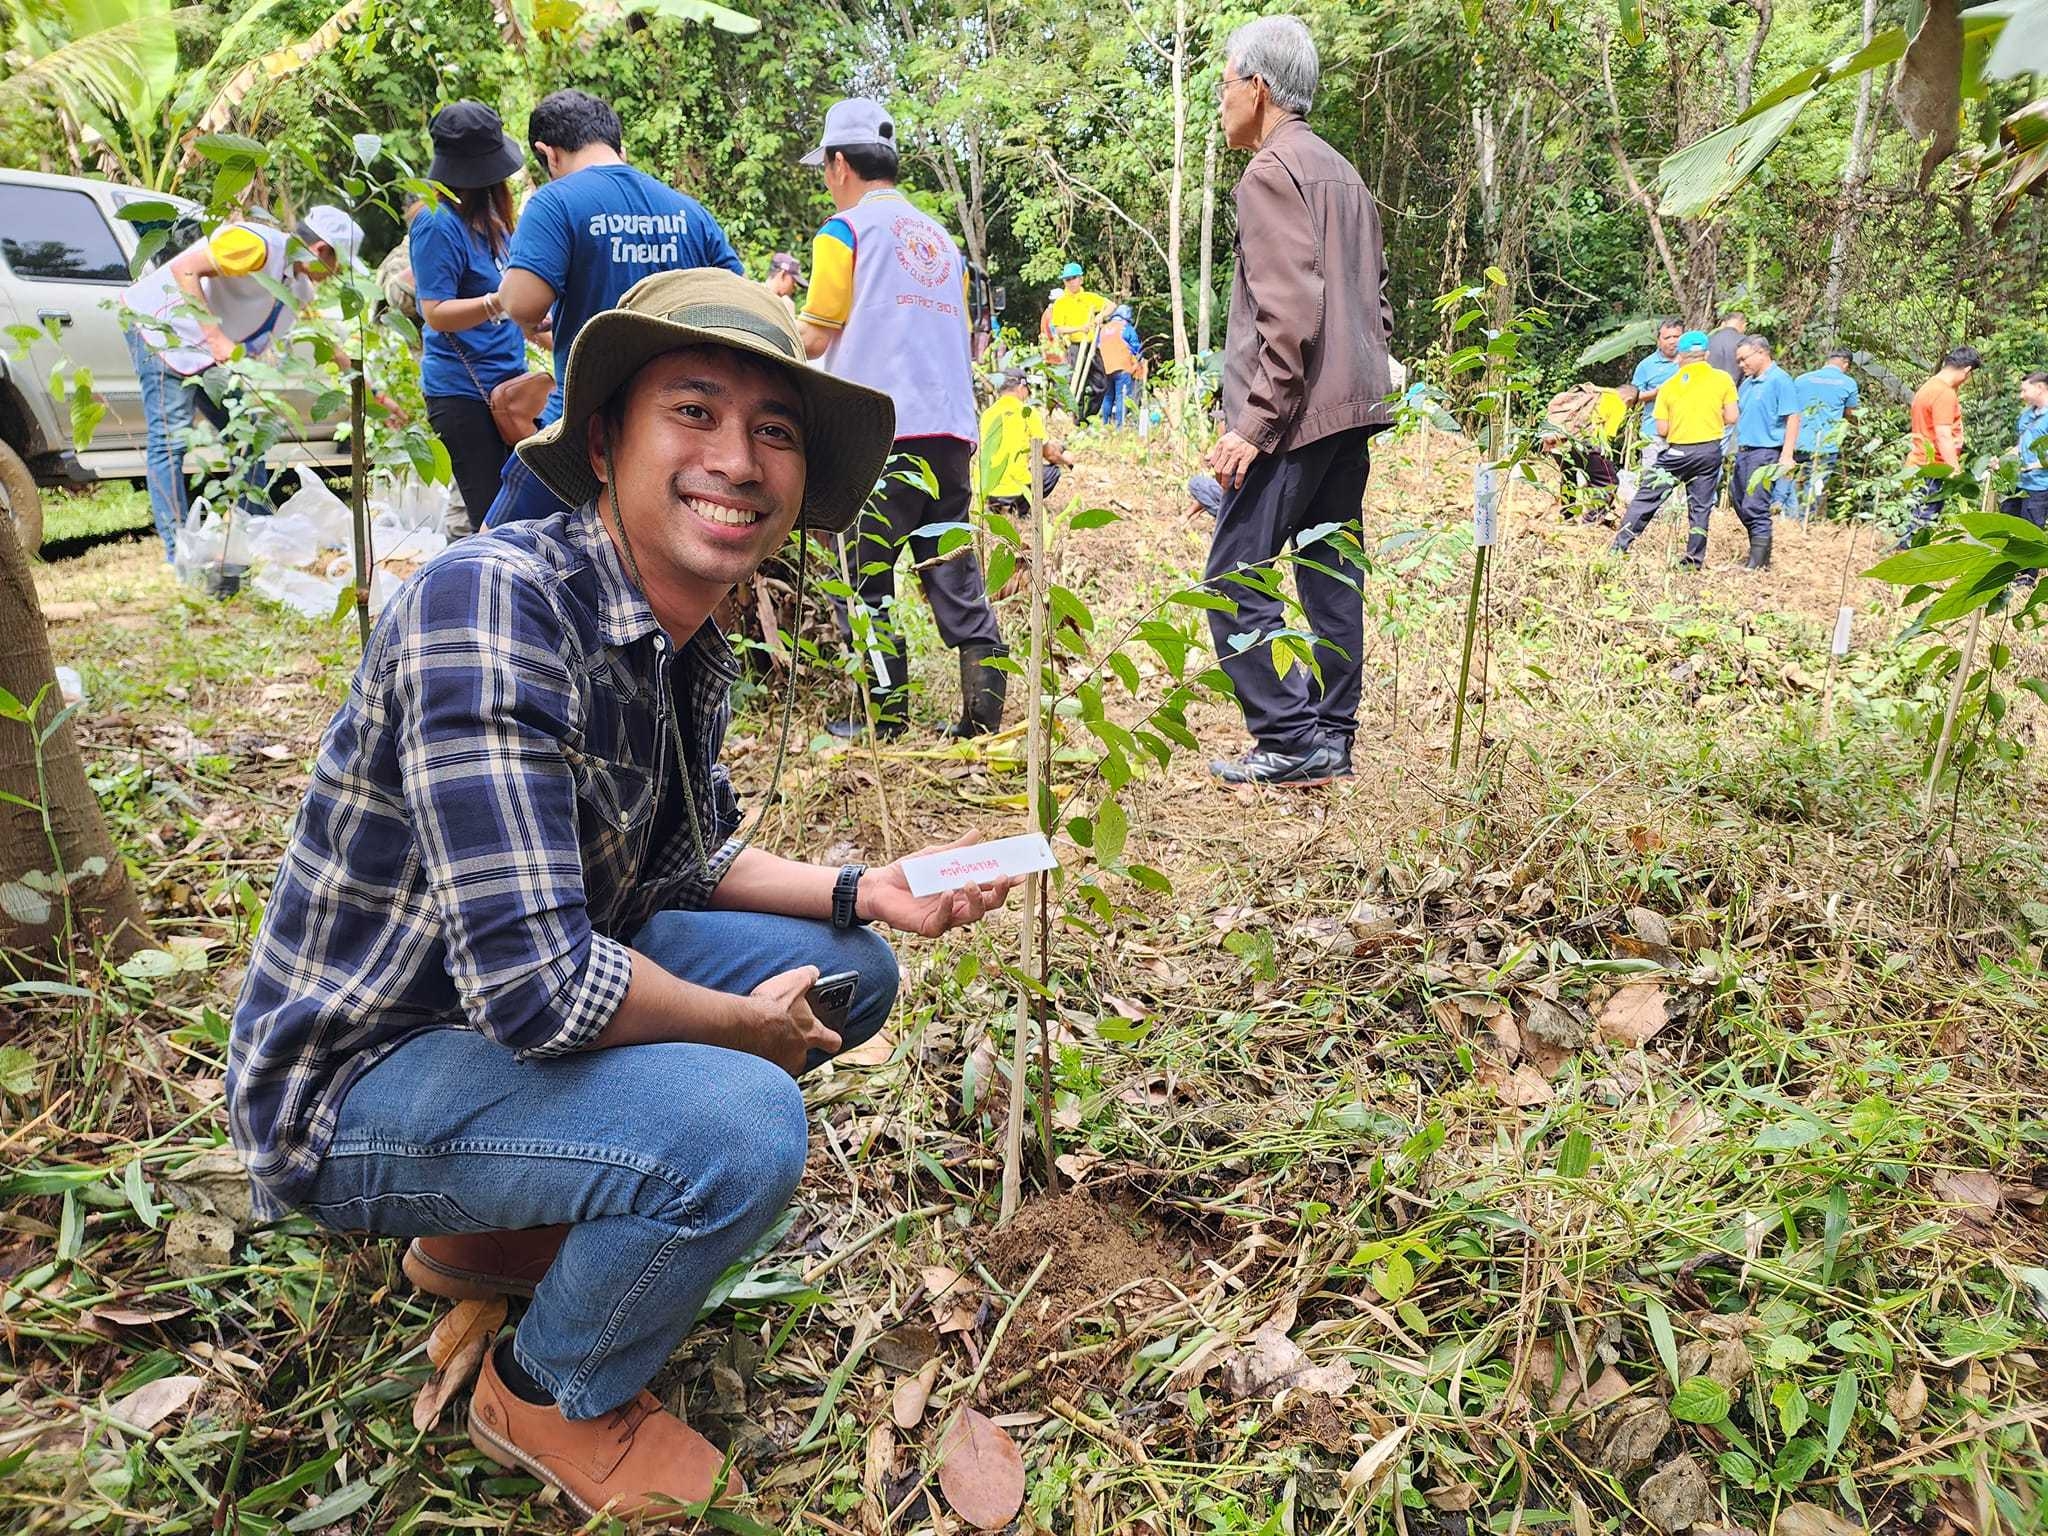 หอการค้าจังหวัดสงขลา และ YEC SONGKHLA ร่วมจัดกิจกรรมฟื้นฟู บำรุง รักษา ปลูกป่าผาดำ เพื่อดูแลรักษาพื้นที่ป่า และส่งเสริมการอนุรักษ์ทรัพยากรธรรมชาติและสิ่งแวดล้อม